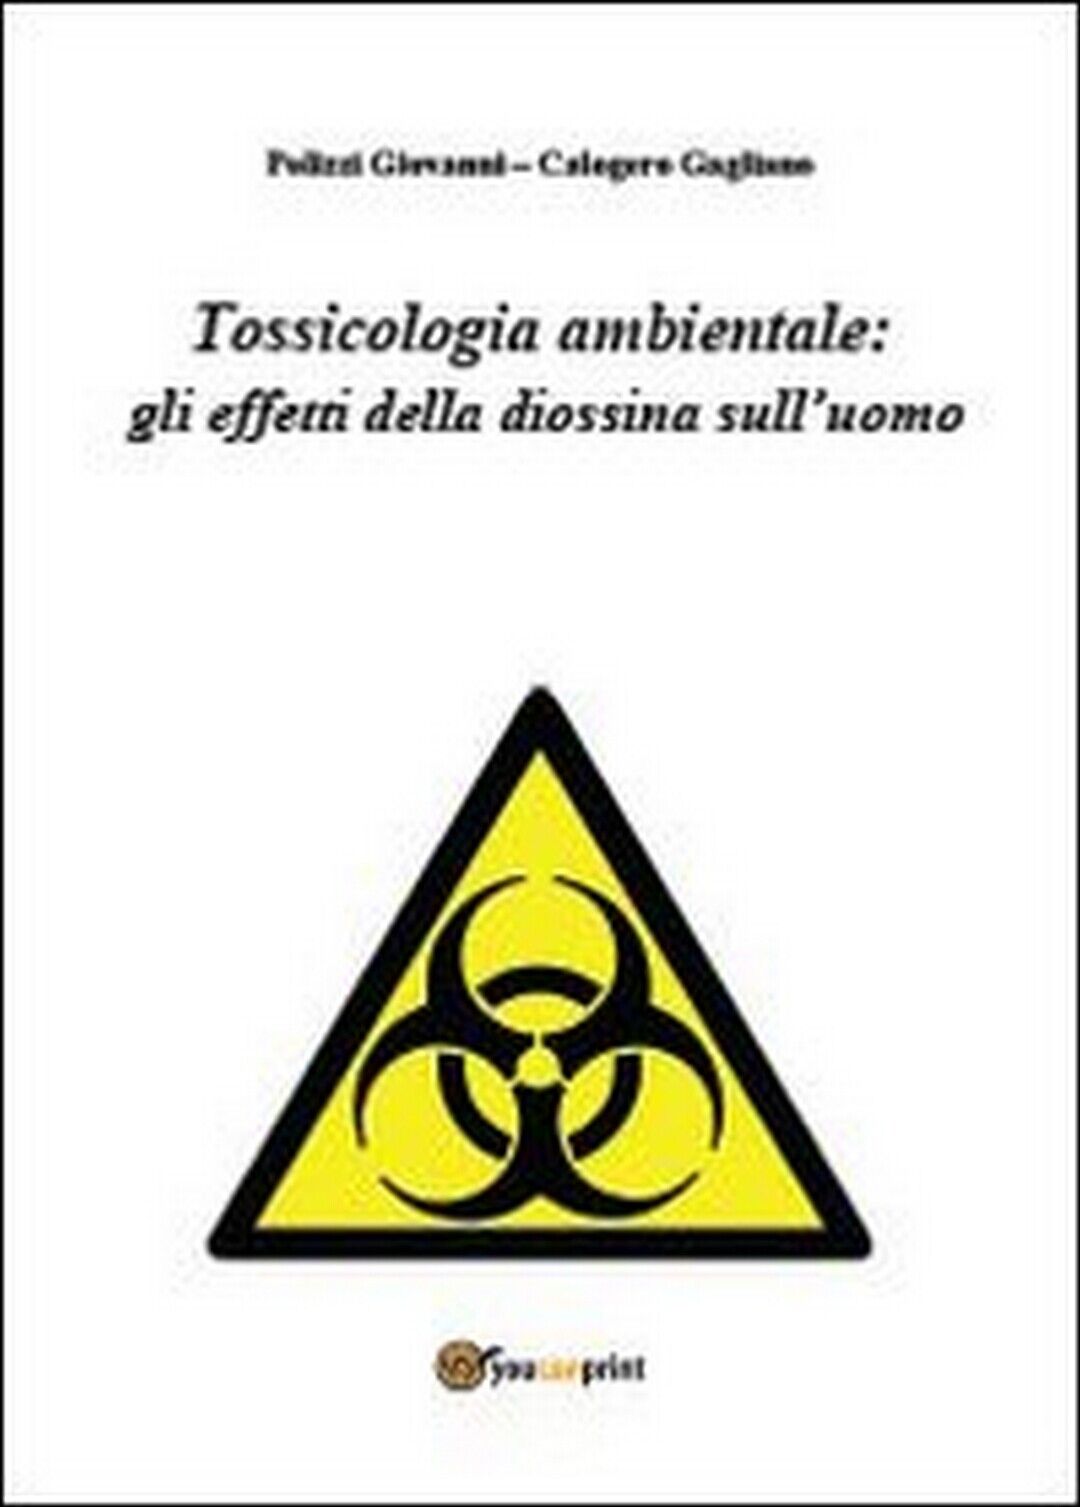 Tossicologia ambientale: gli effetti della diossina sulL'uomo (Polizzi, Gagliano